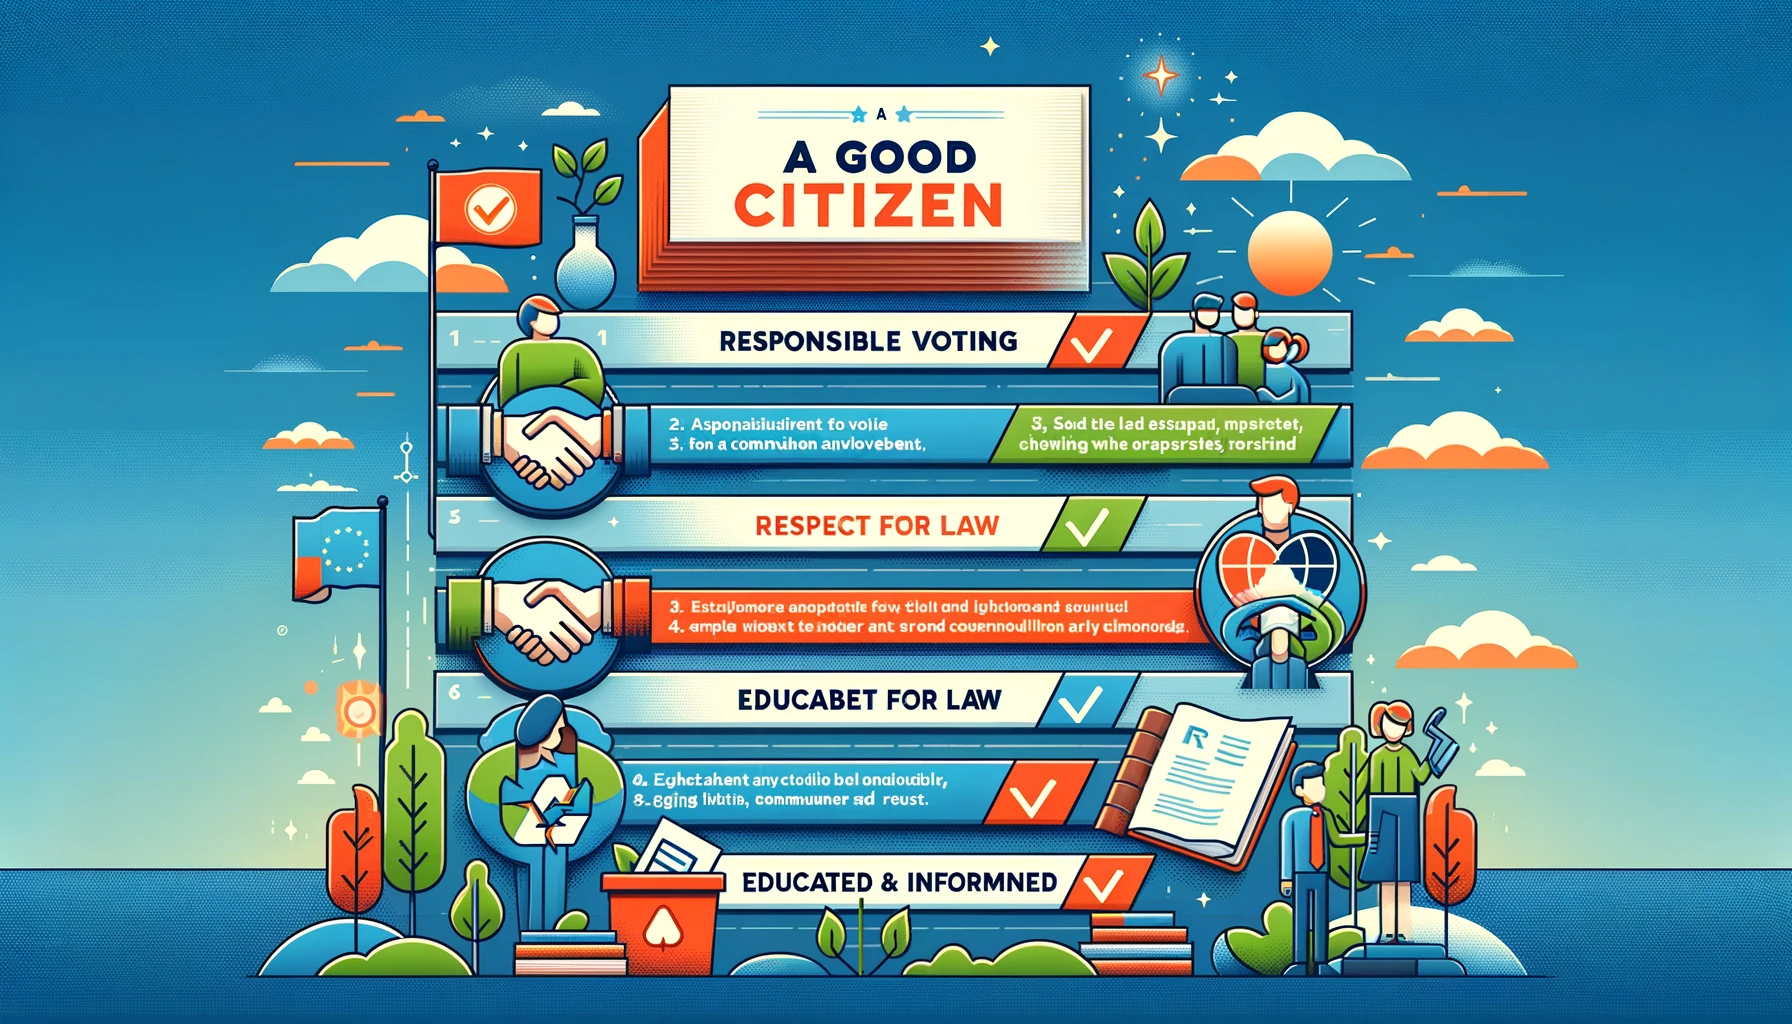 10 Qualities of A Good Citizen